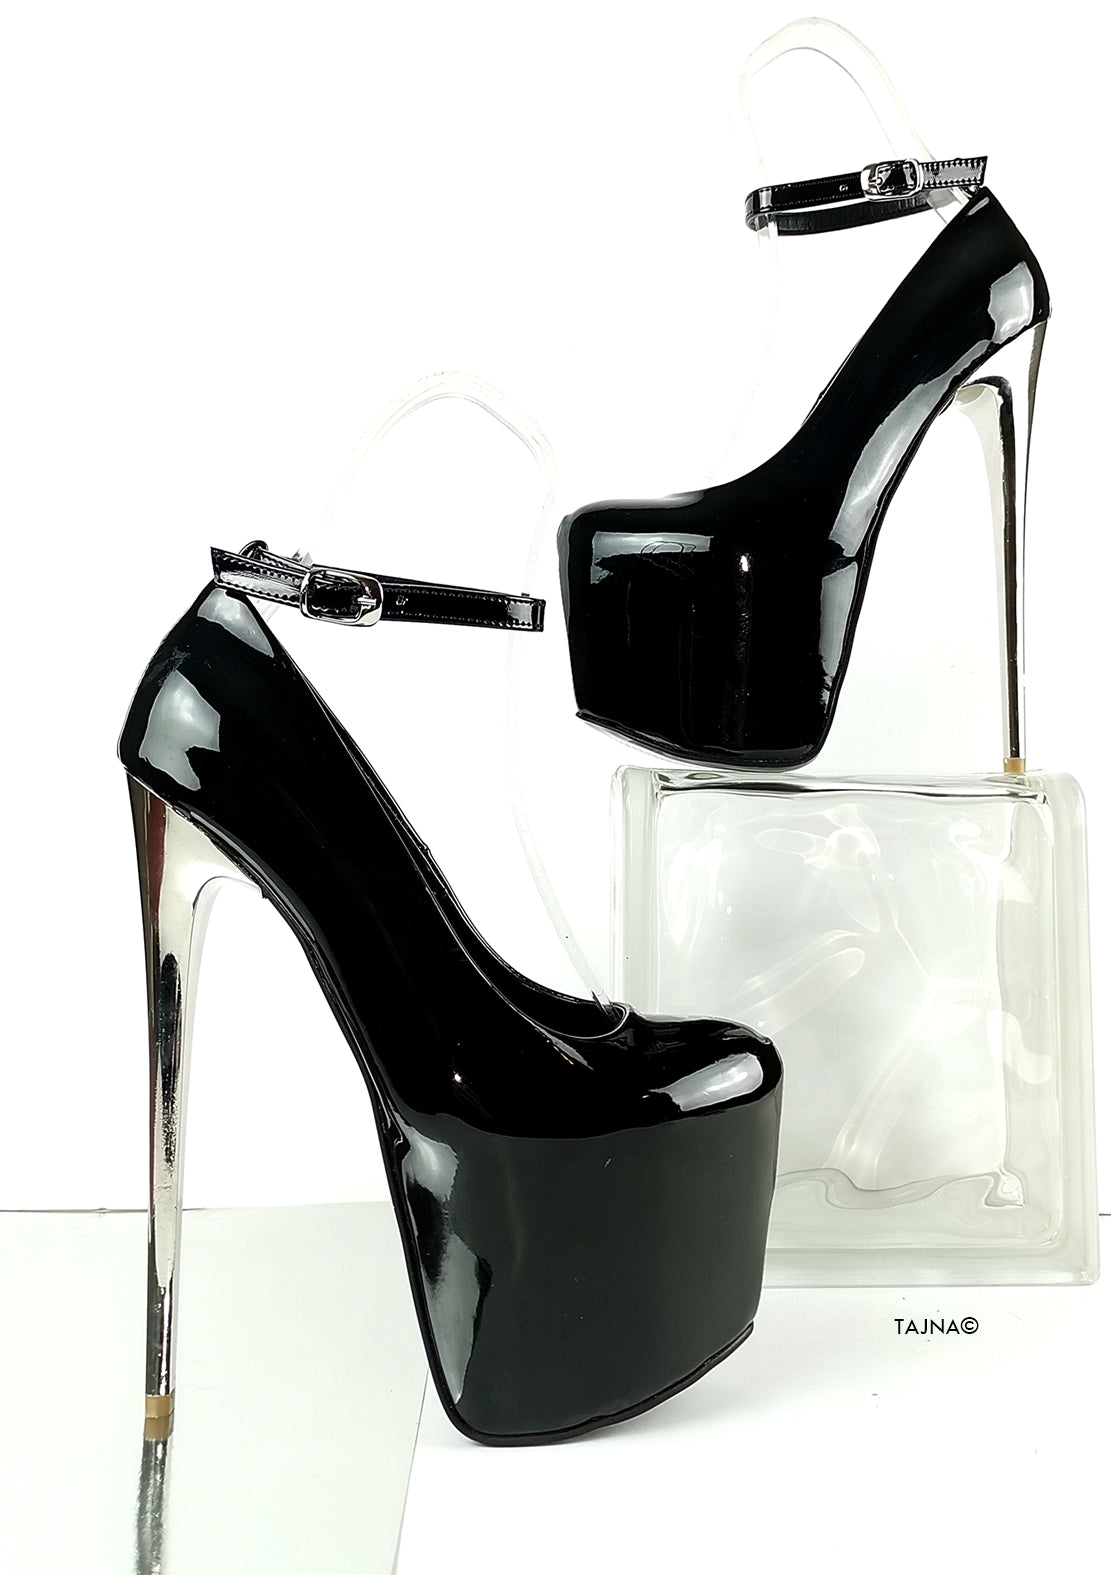 Ankle Strap Black Patent Metallic Heels - Tajna Club